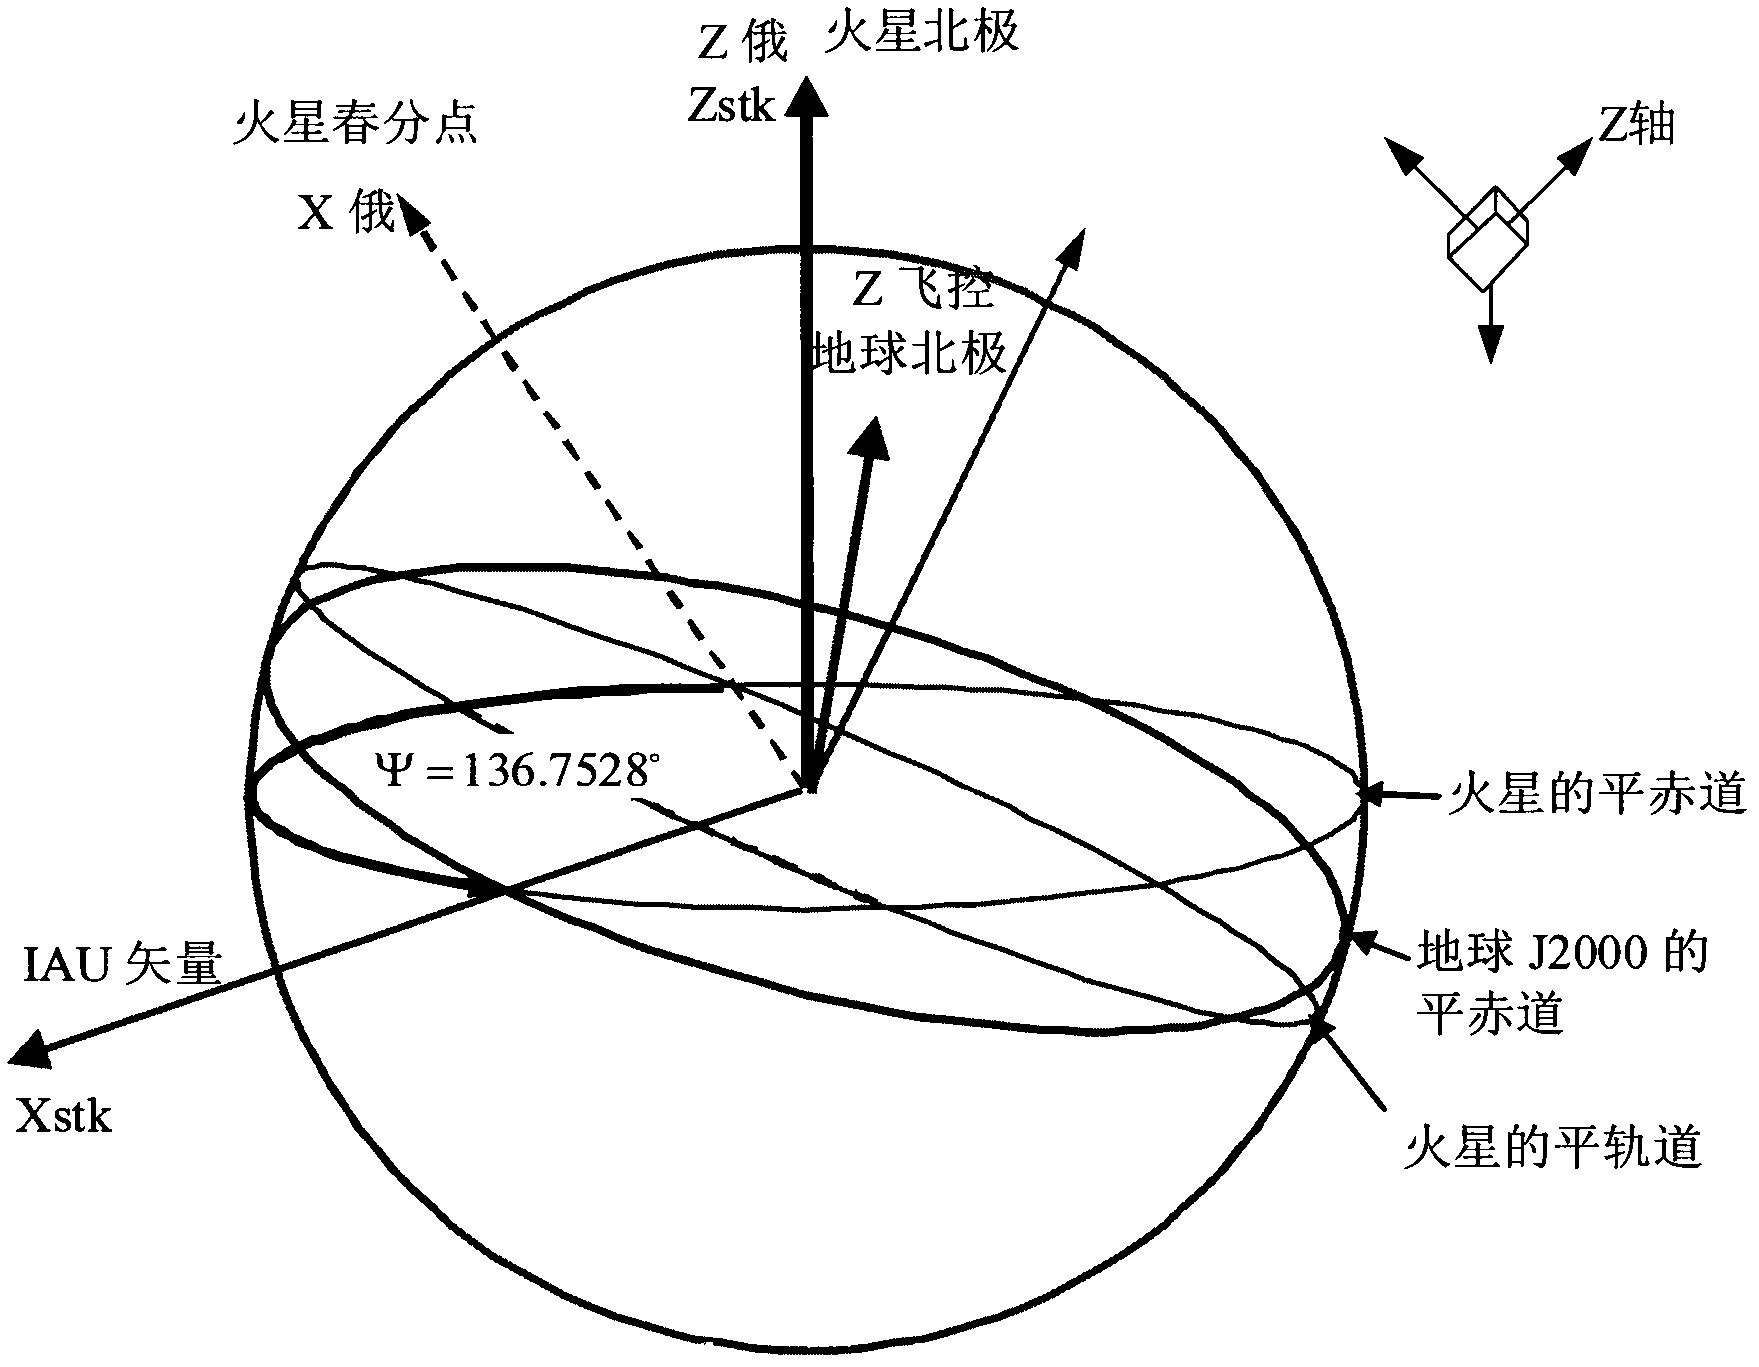 Mars self-orientating method of large elliptical orbit Mars probe